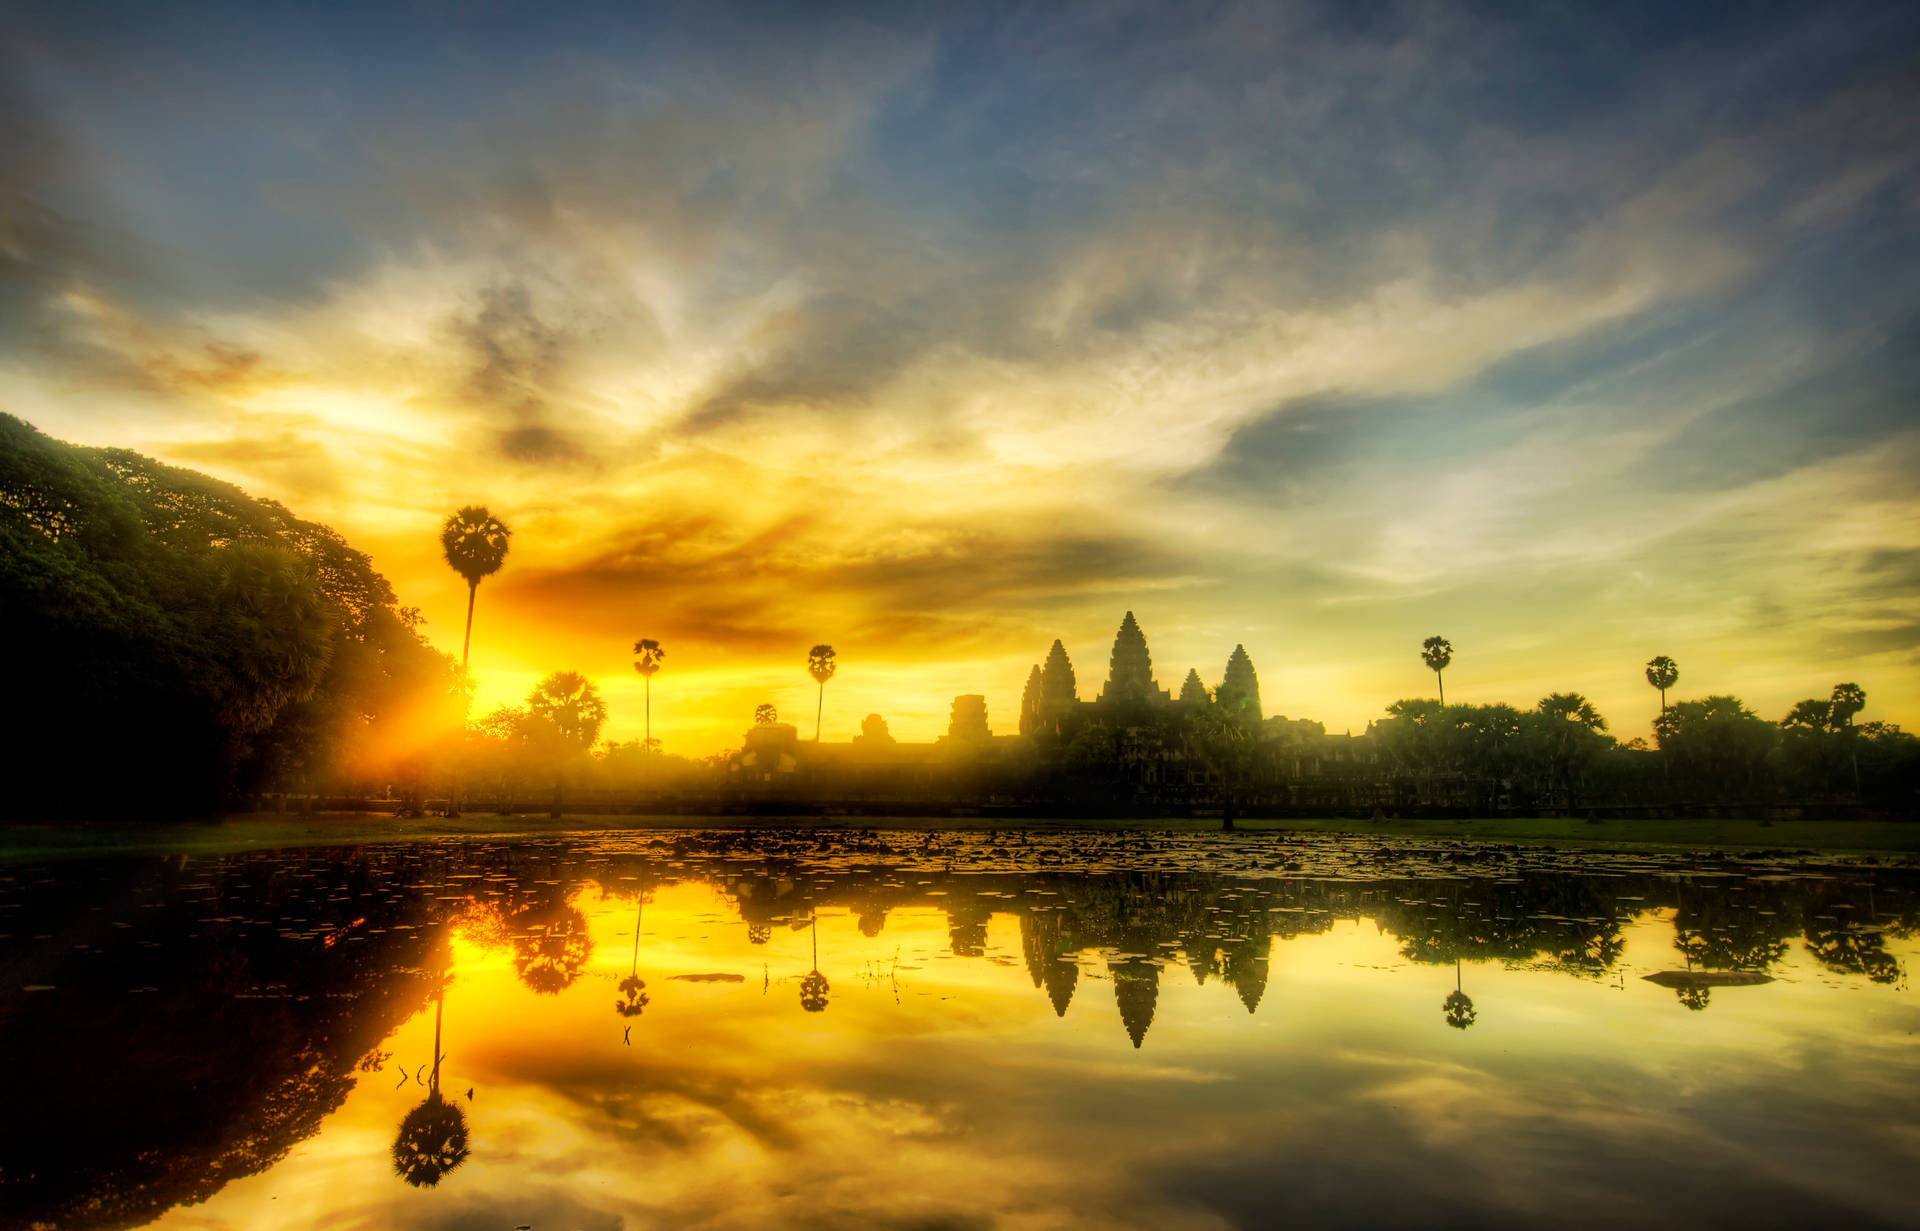 Angkor Wat Beneath A Beautiful Sunset Sky